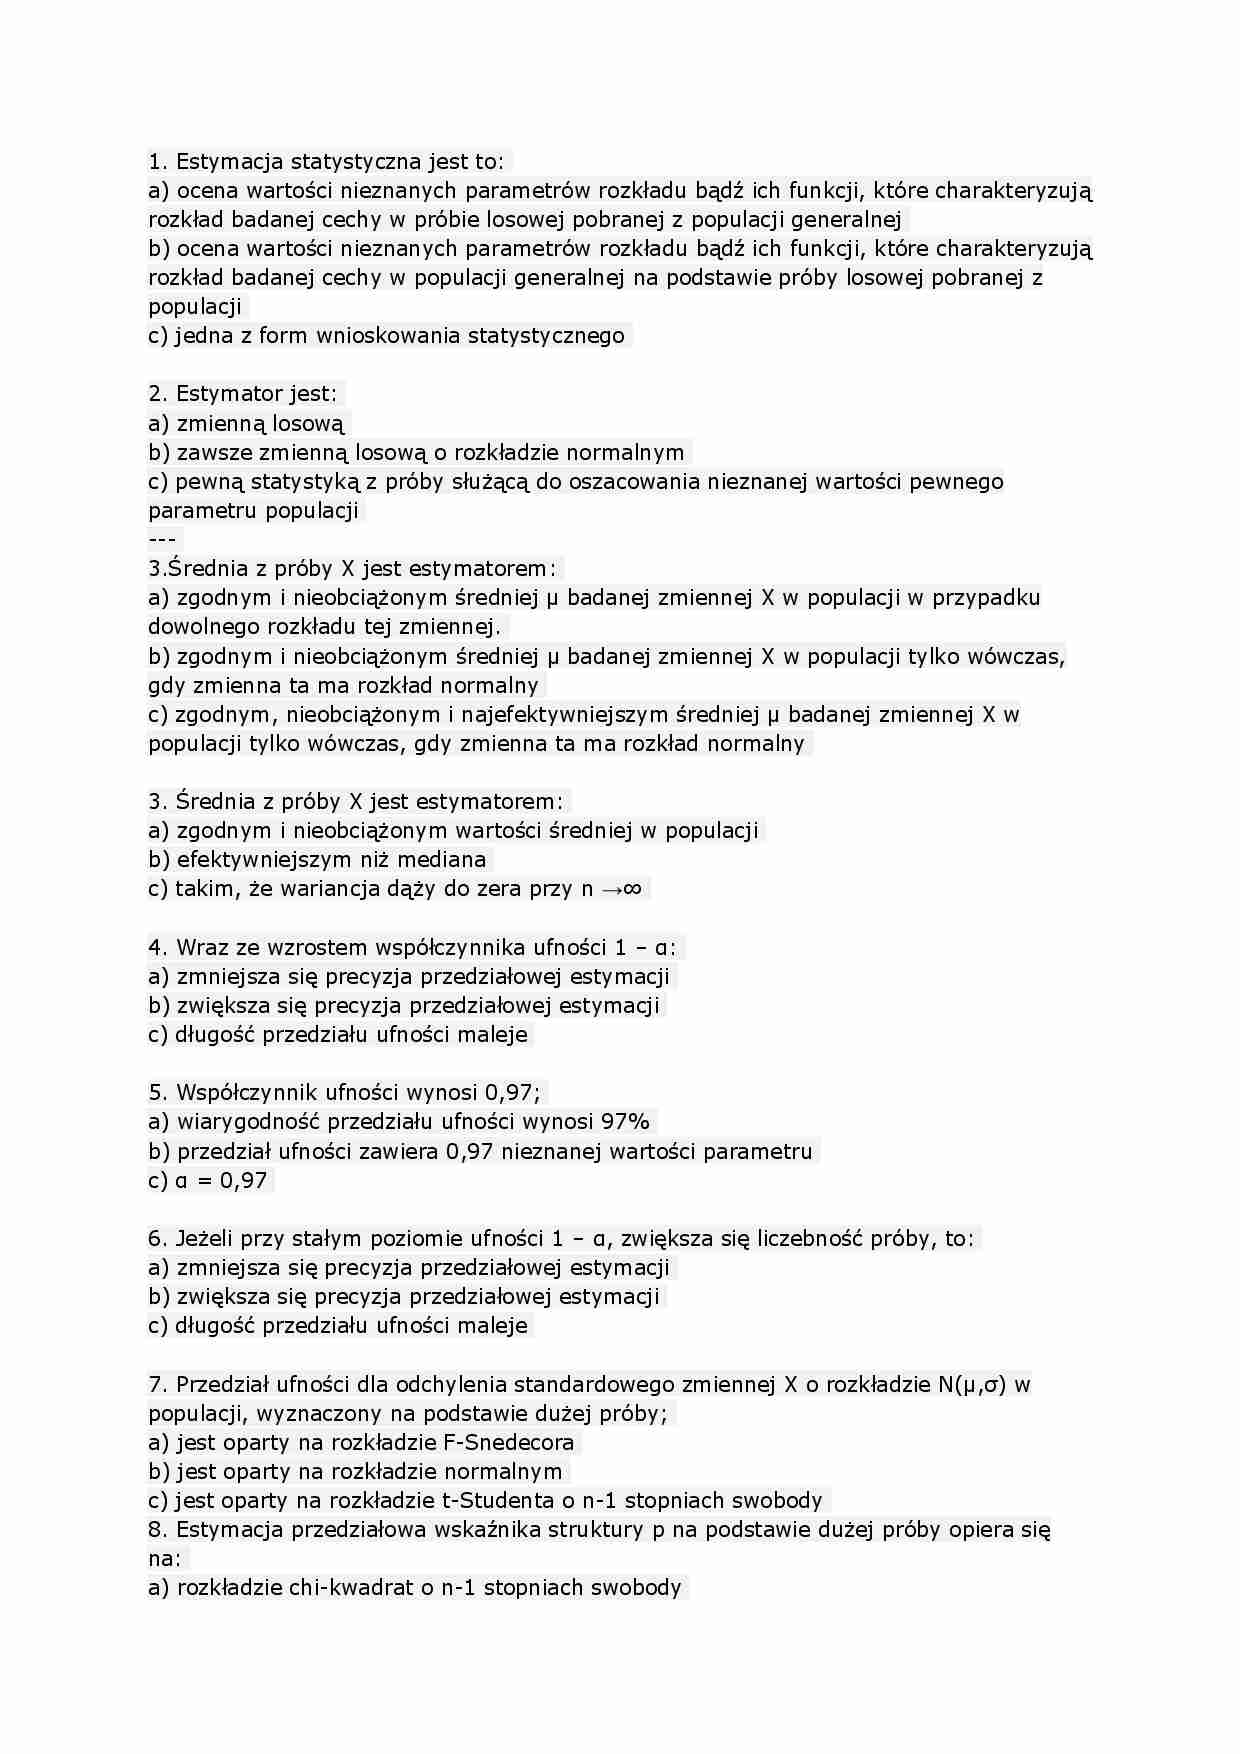 Test Z Wesela Z Odpowiedziami Statyka matematyczna - test z odpowiedziami - Notatek.pl